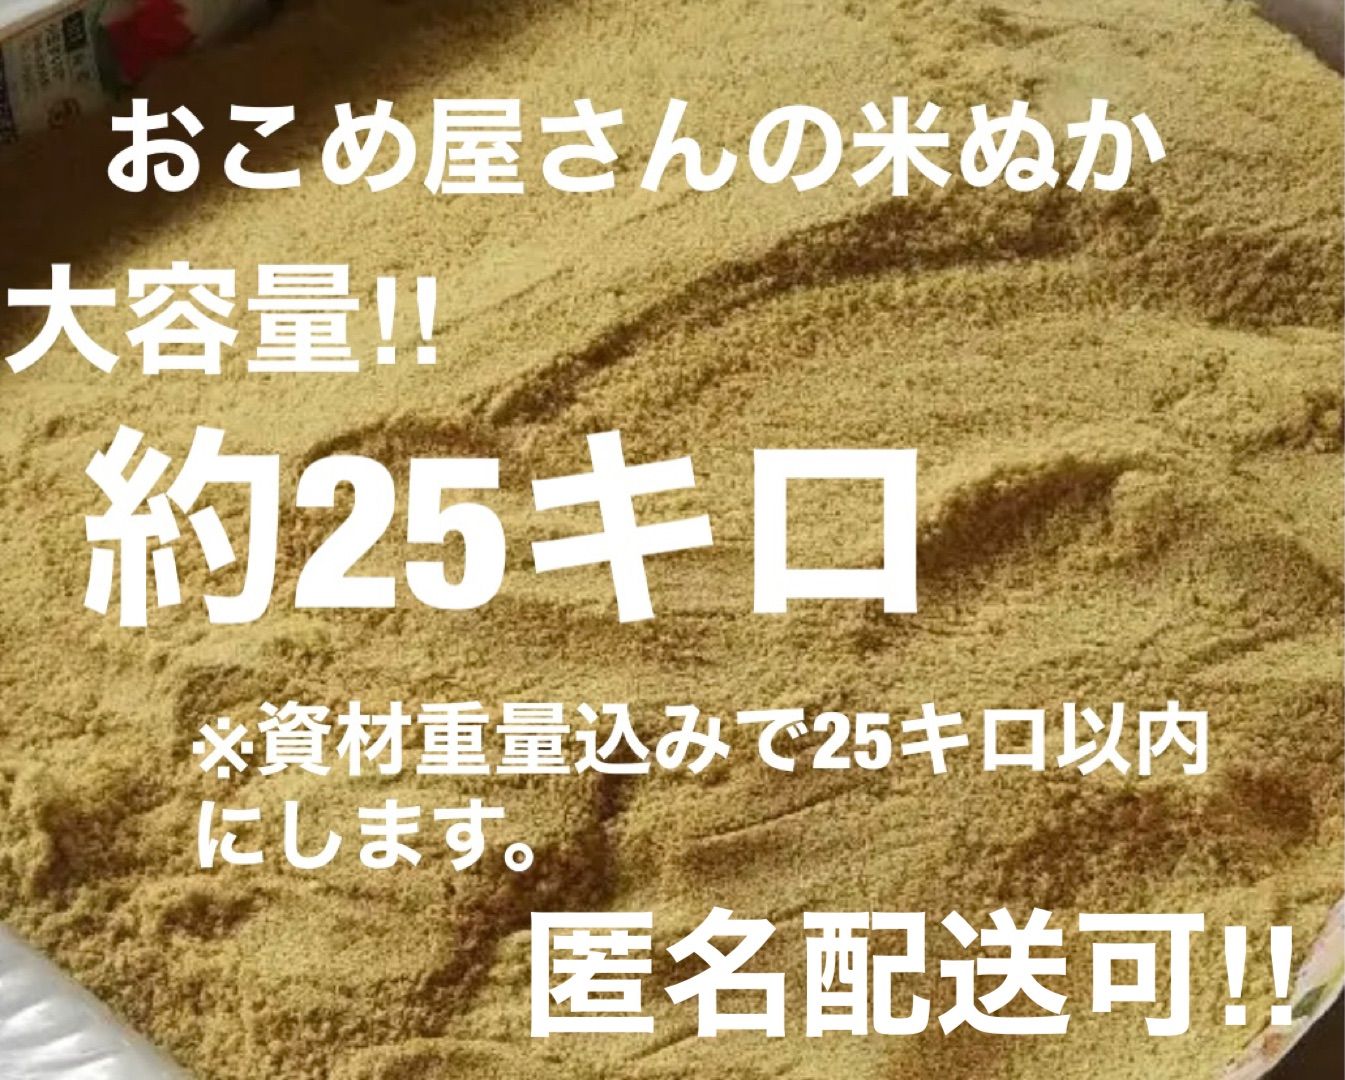 贈物 ぬか 1kg 米ぬか 特別栽培米使用 北海道産 特別栽培米 糠 米糠 こめぬか メール便で発送